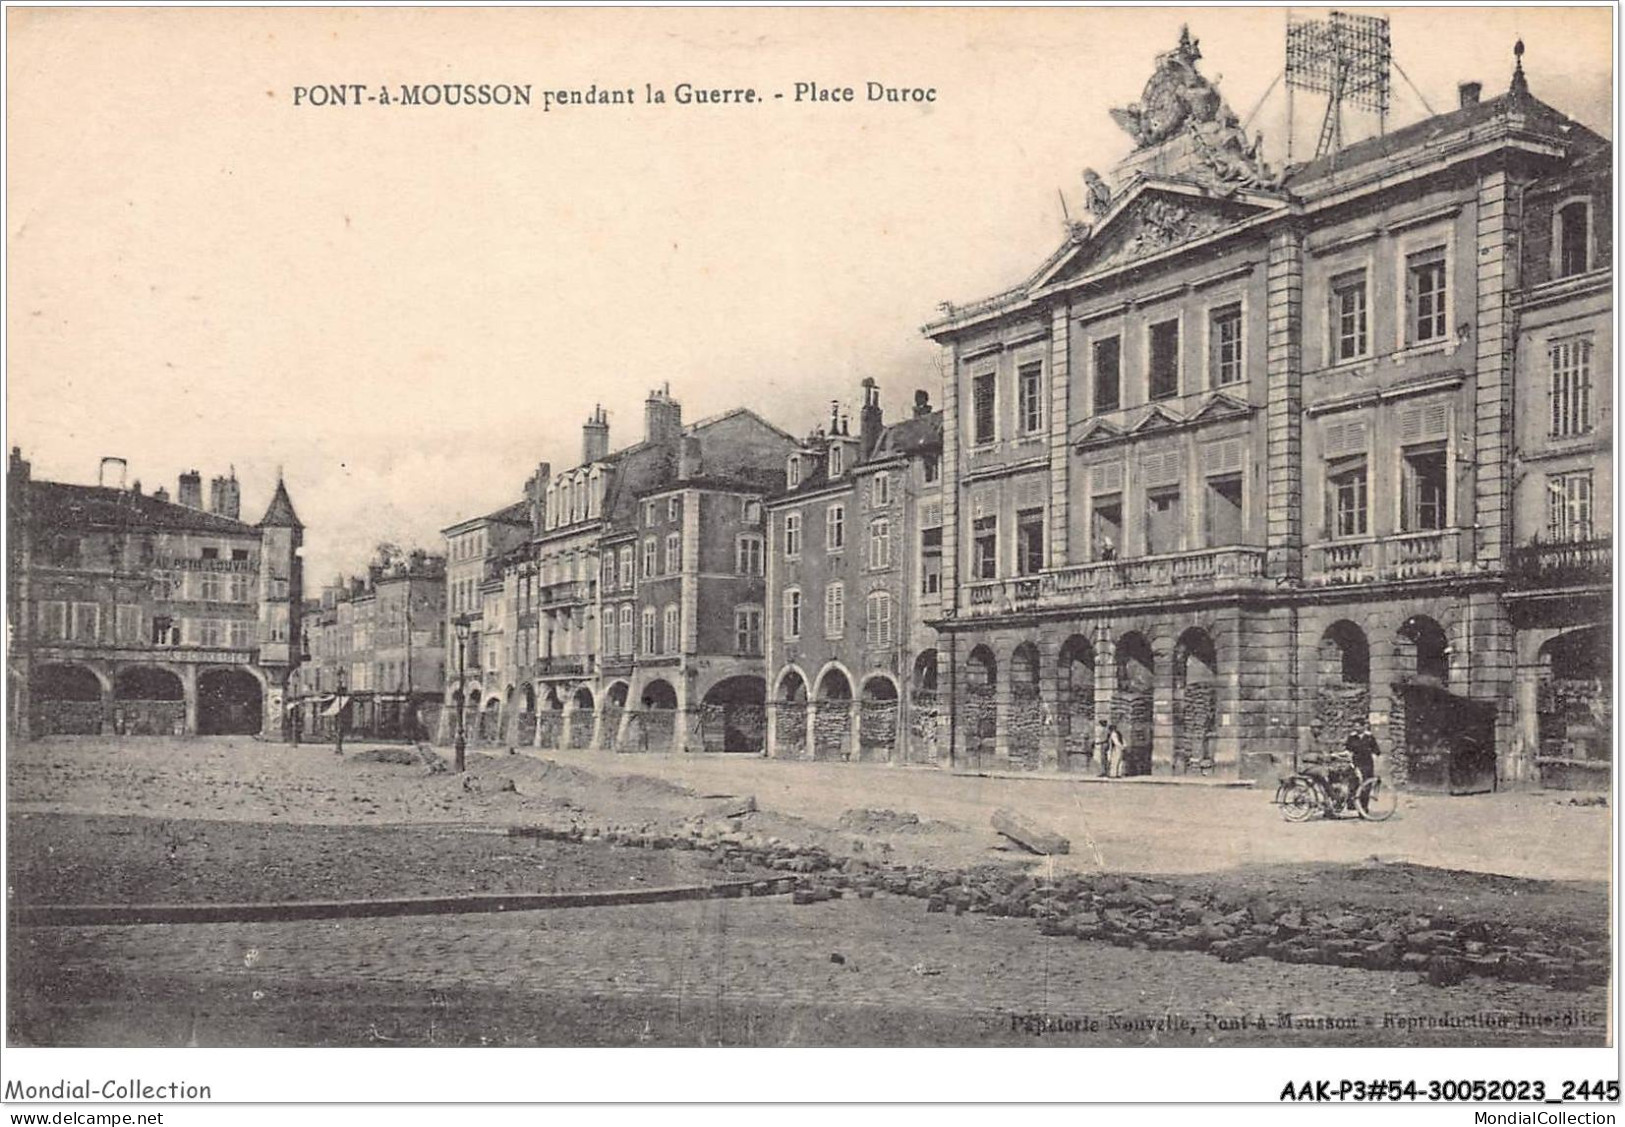 AAKP3-54-0251 - PONT-A-MOUSSON - Pendant La Guerre - Place Duroc - Pont A Mousson